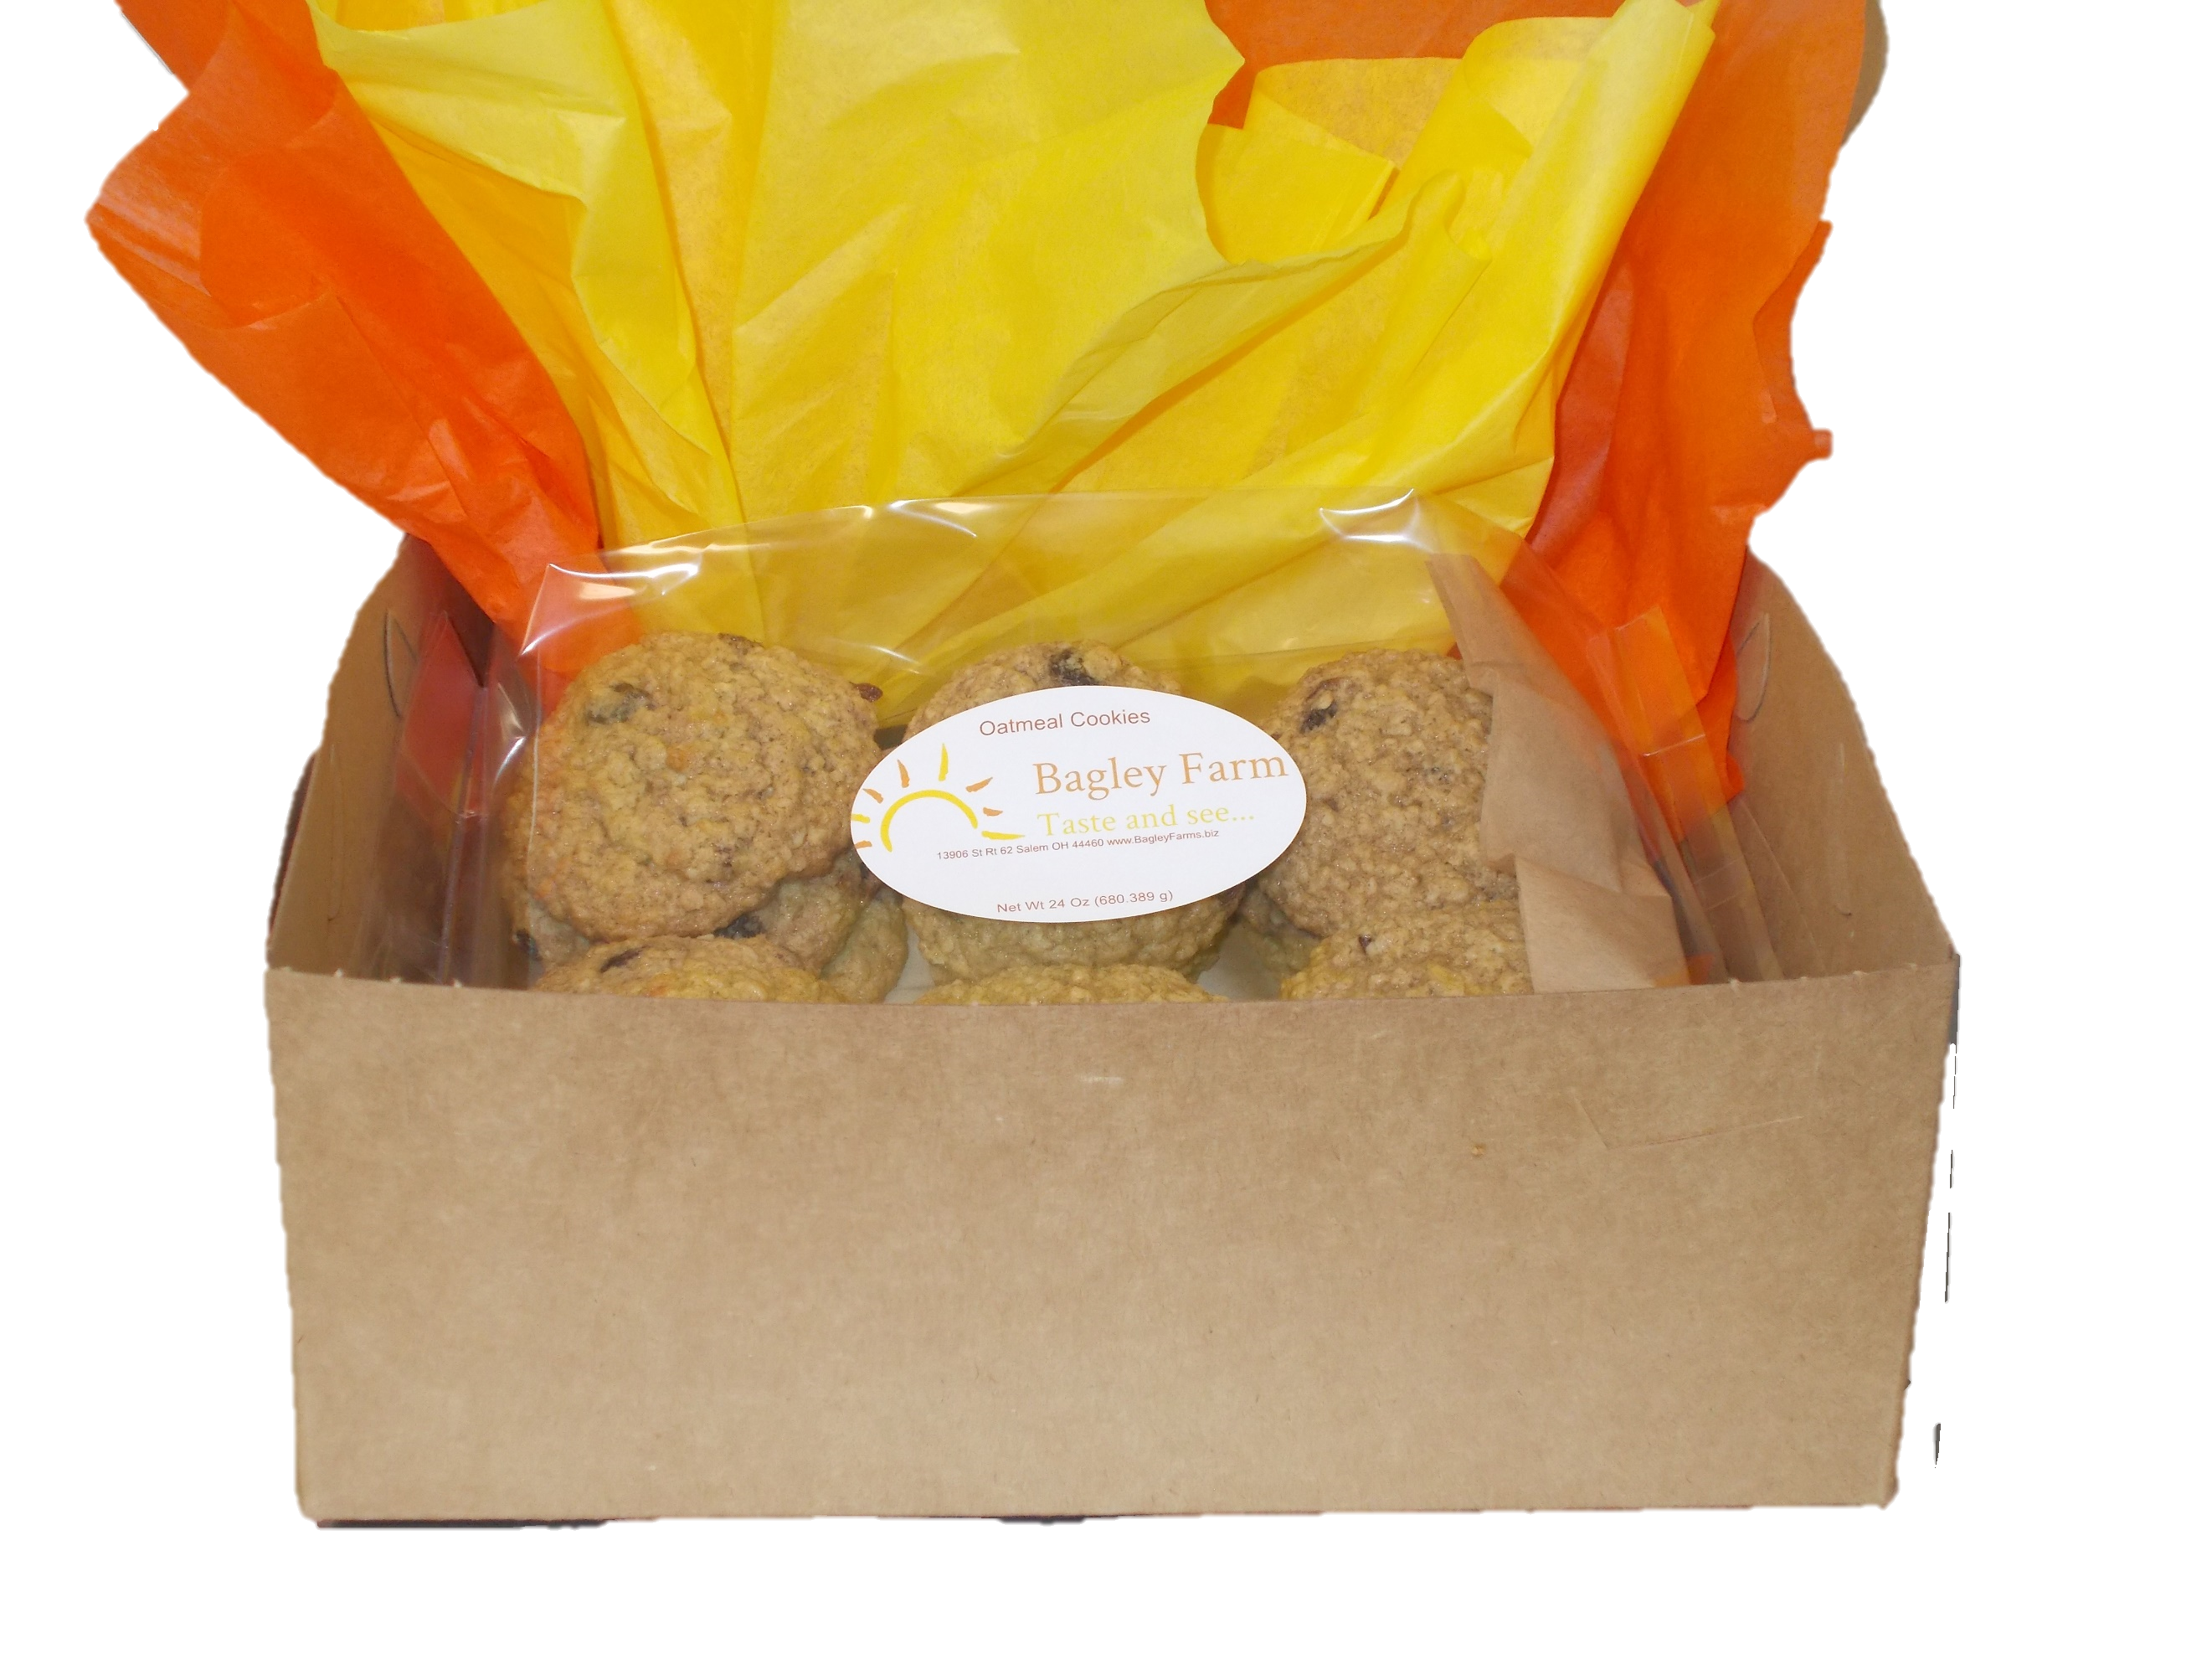 Bagley Farm's Oatmeal Cookies - 1 dozen